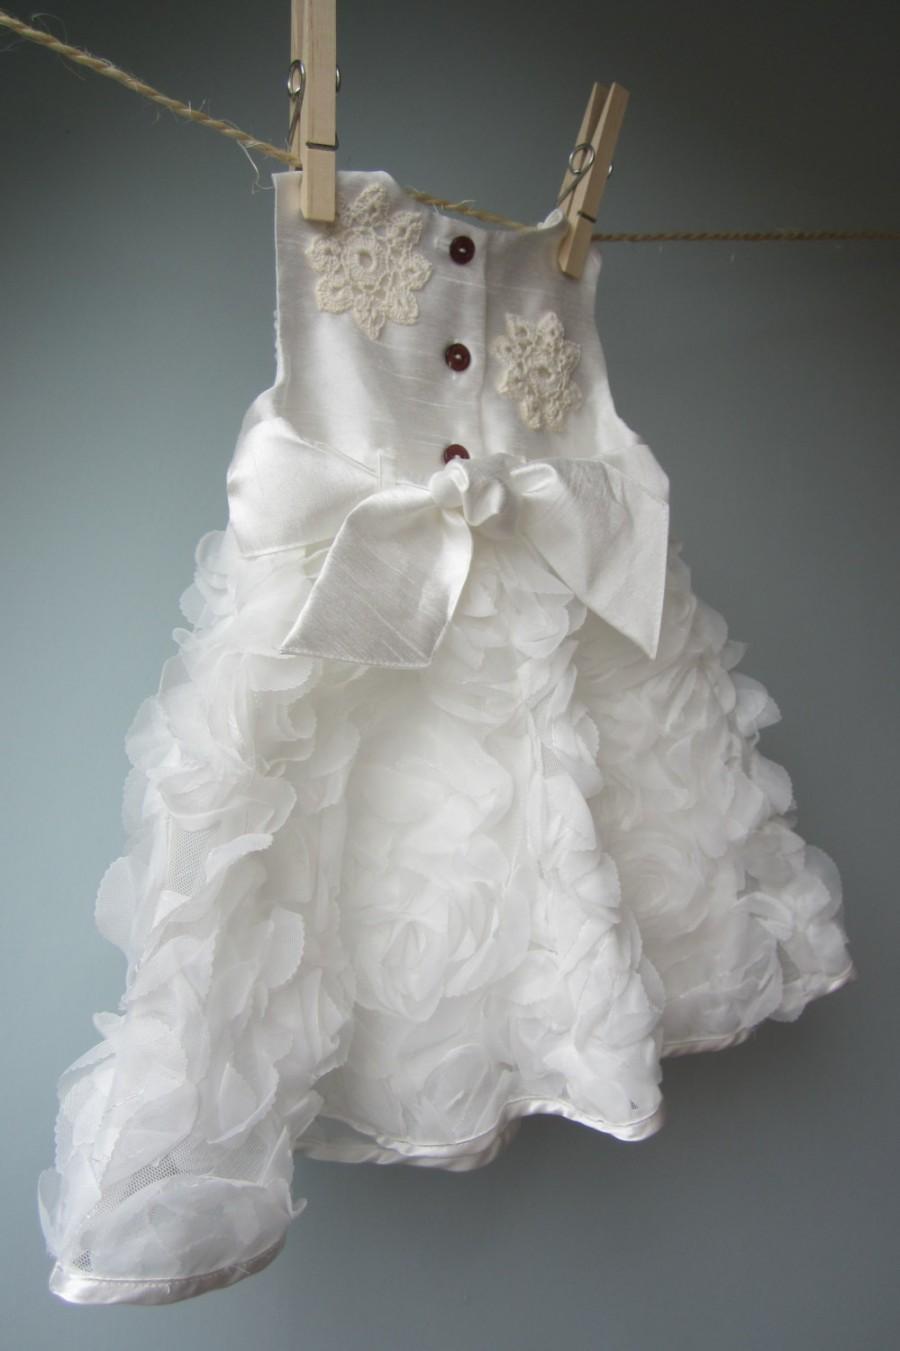 زفاف - Baby flower girl dress, christening dress, white embellished dress ruffle dress, newborn dress 0-3 mths baby dress special occasion dress